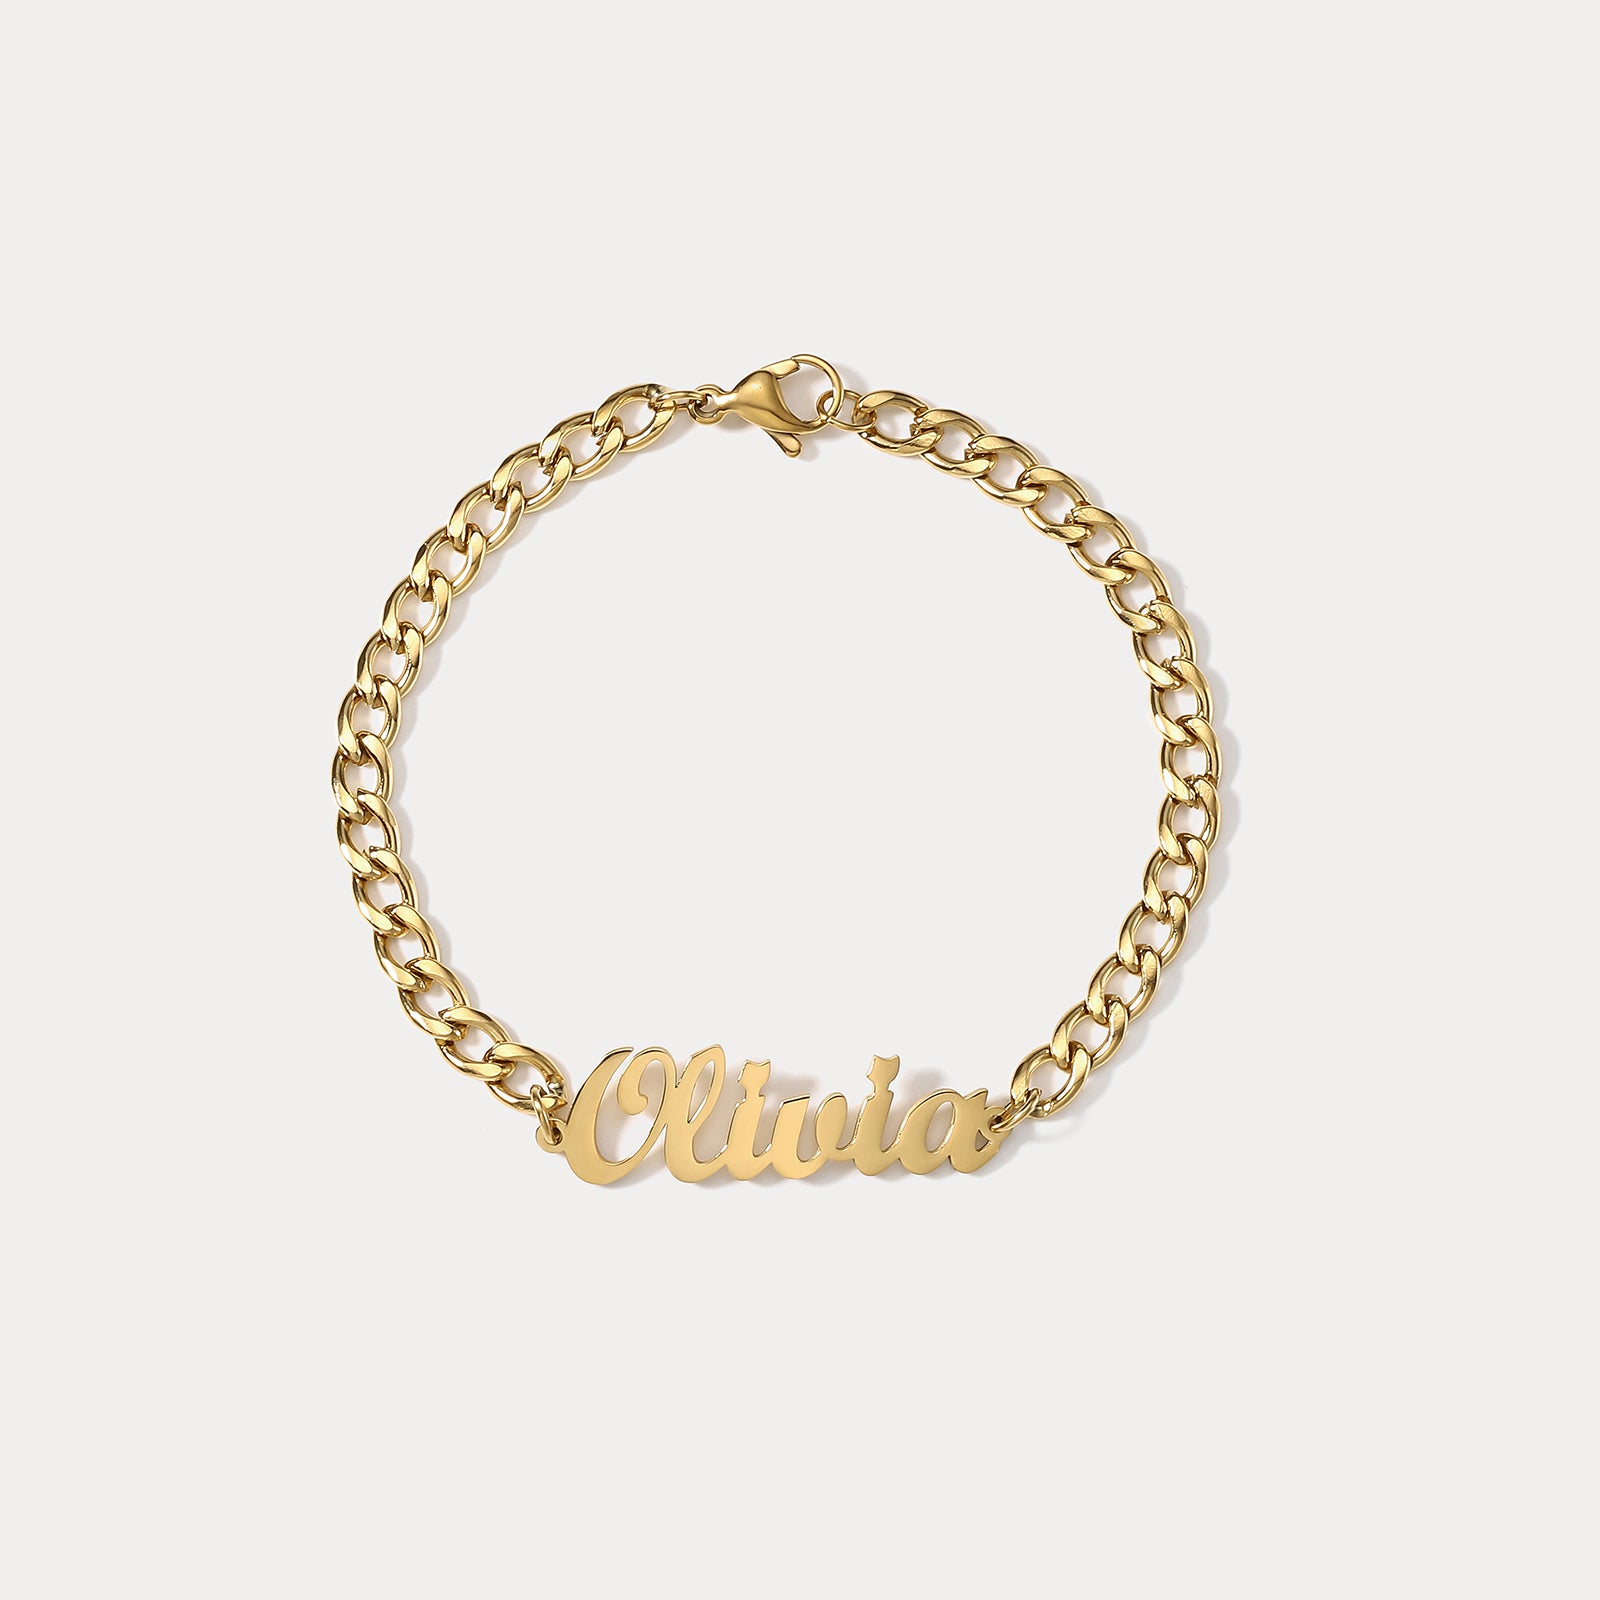 Selenichast Custom Name Chain Bracelet